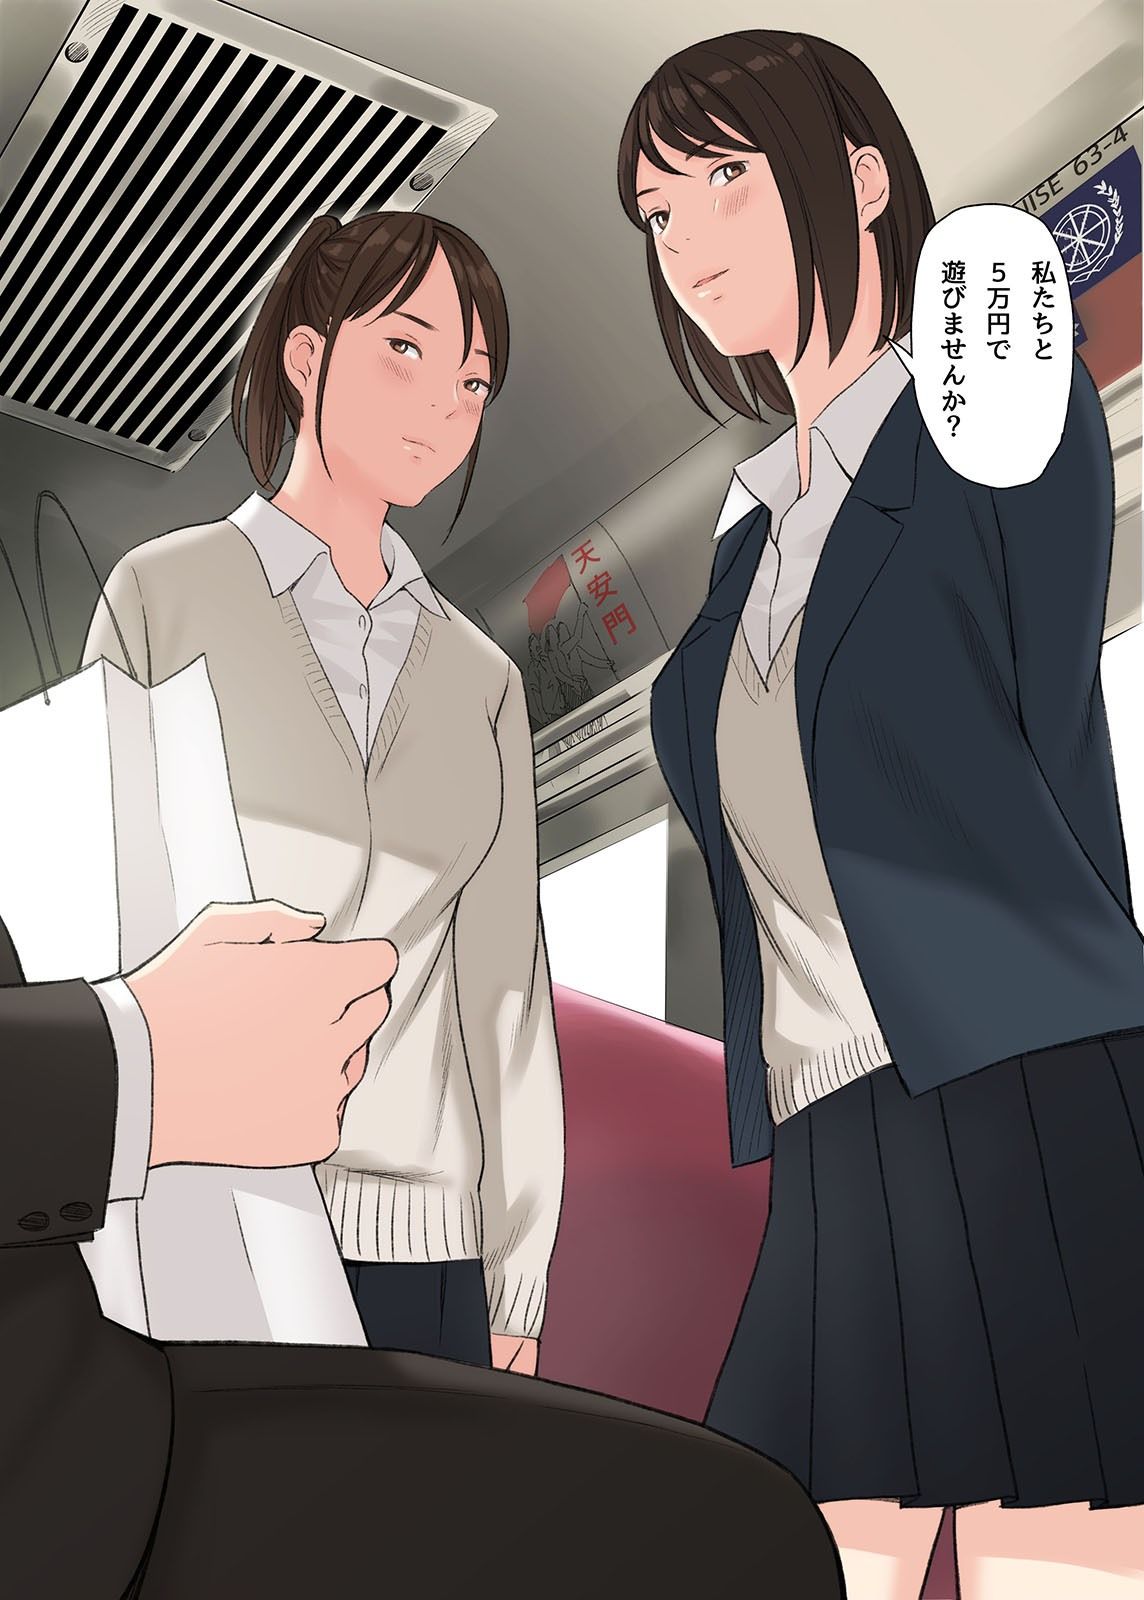 【エロ漫画無料大全集】【エロ漫画フルカラー】地方のローカル電車でパンツ見せつけてくる女の子達に「5万円で遊びませんか？」と誘われて…